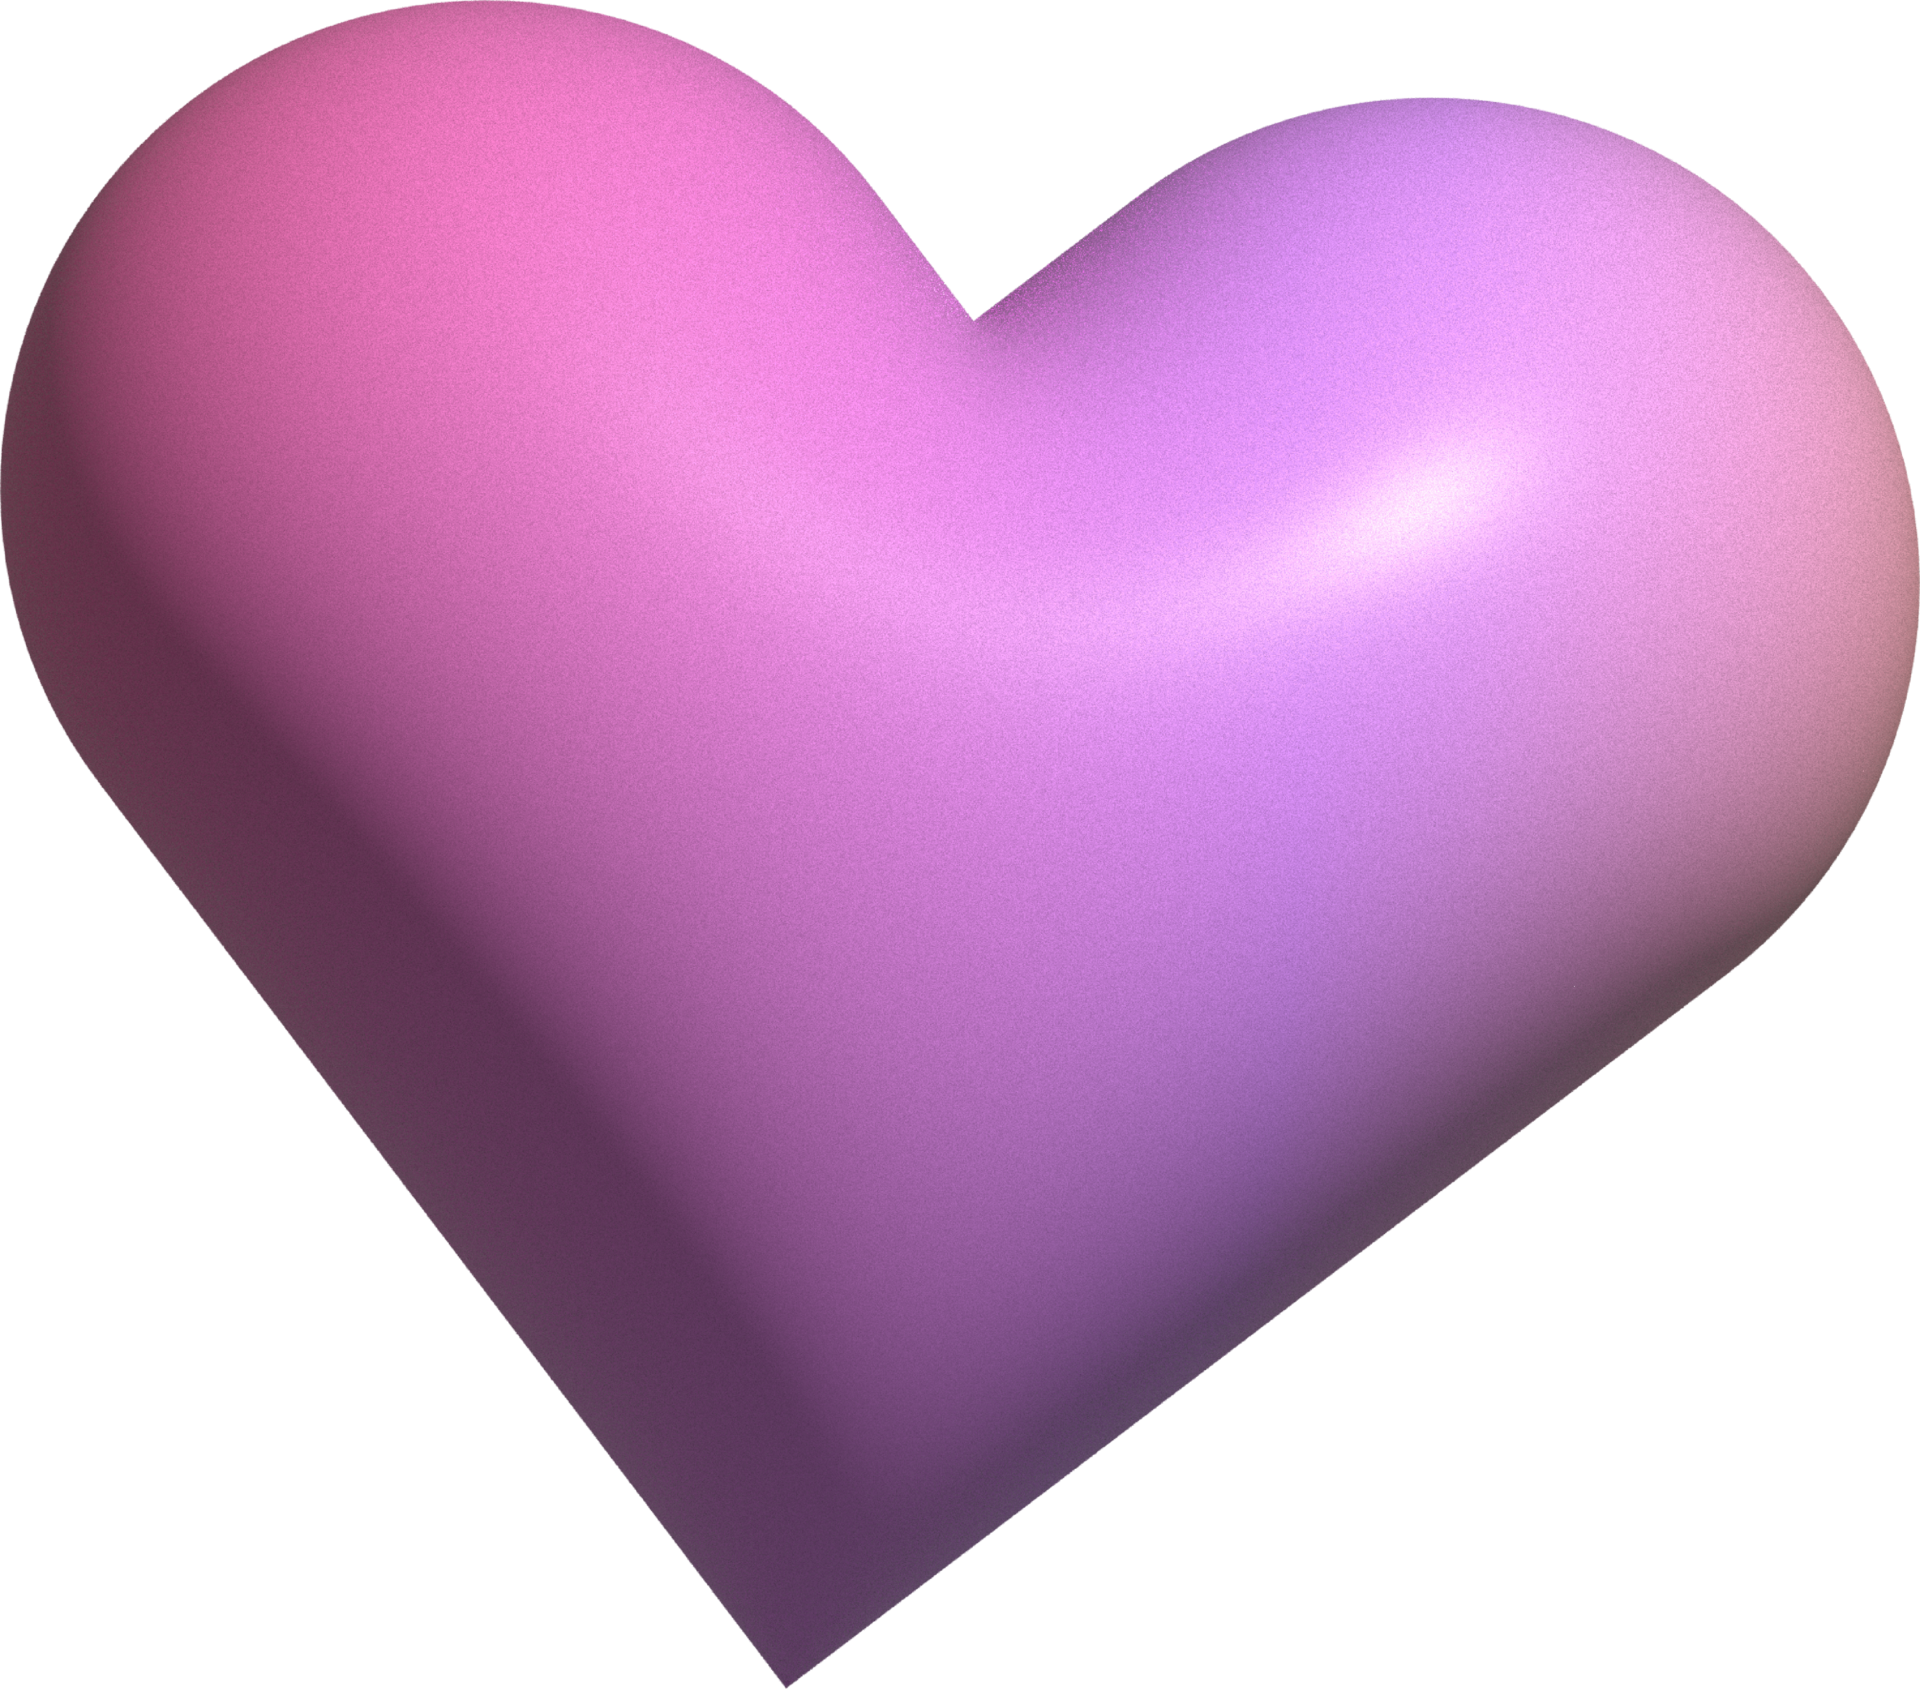 Bức ảnh hình trái tim xinh xắn này sẽ khiến trái tim bạn lấp lánh hơn bao giờ hết. Hình trái tim là biểu tượng của tình yêu và niềm tin, hãy để nó truyền cảm hứng cho ngày mới của bạn.